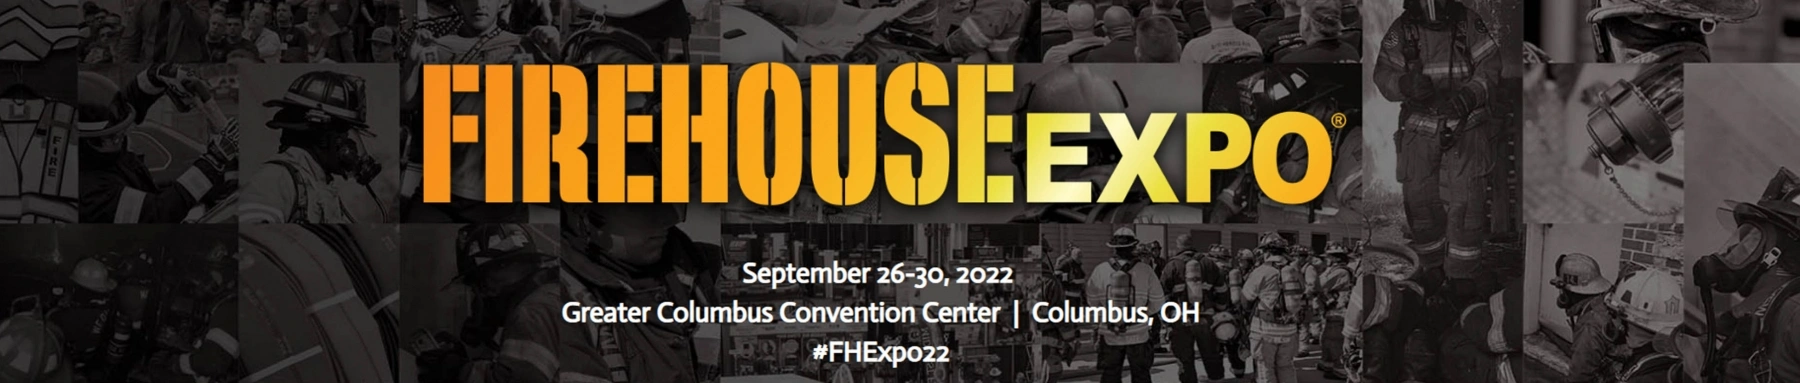 Firehouse Expo logo